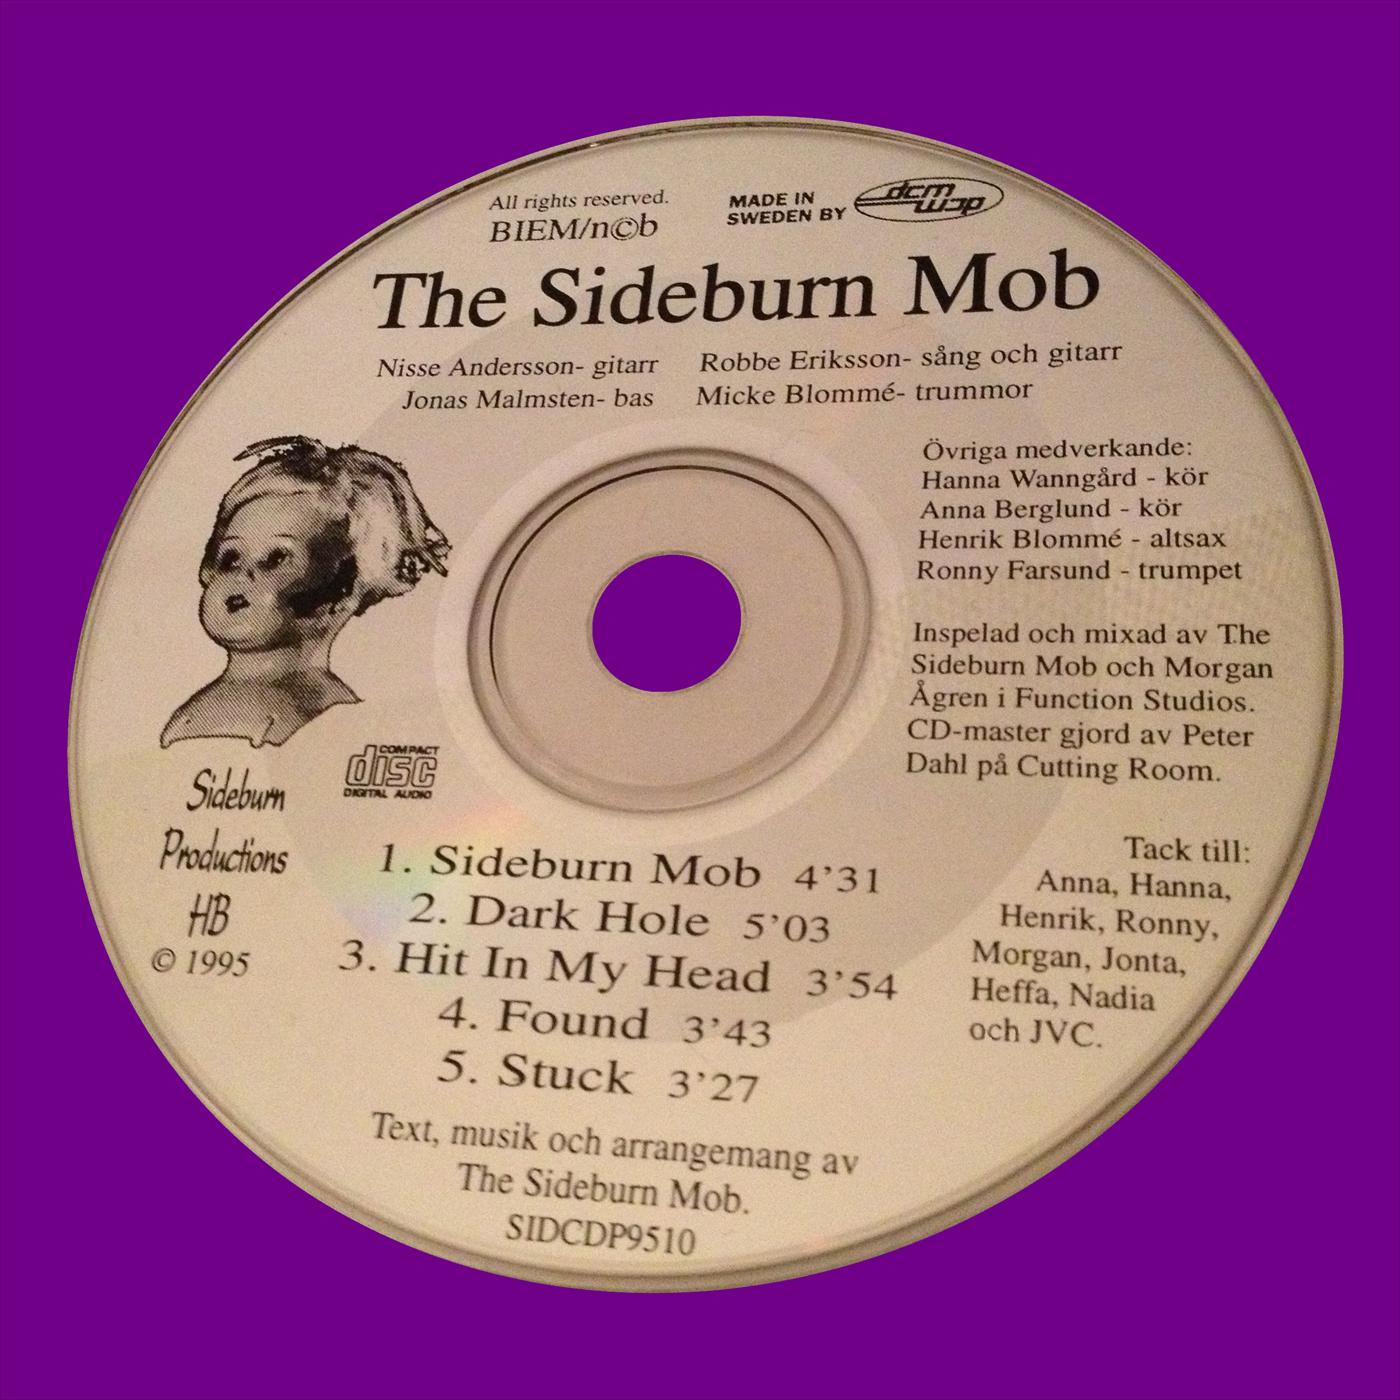 The Sideburn Mob